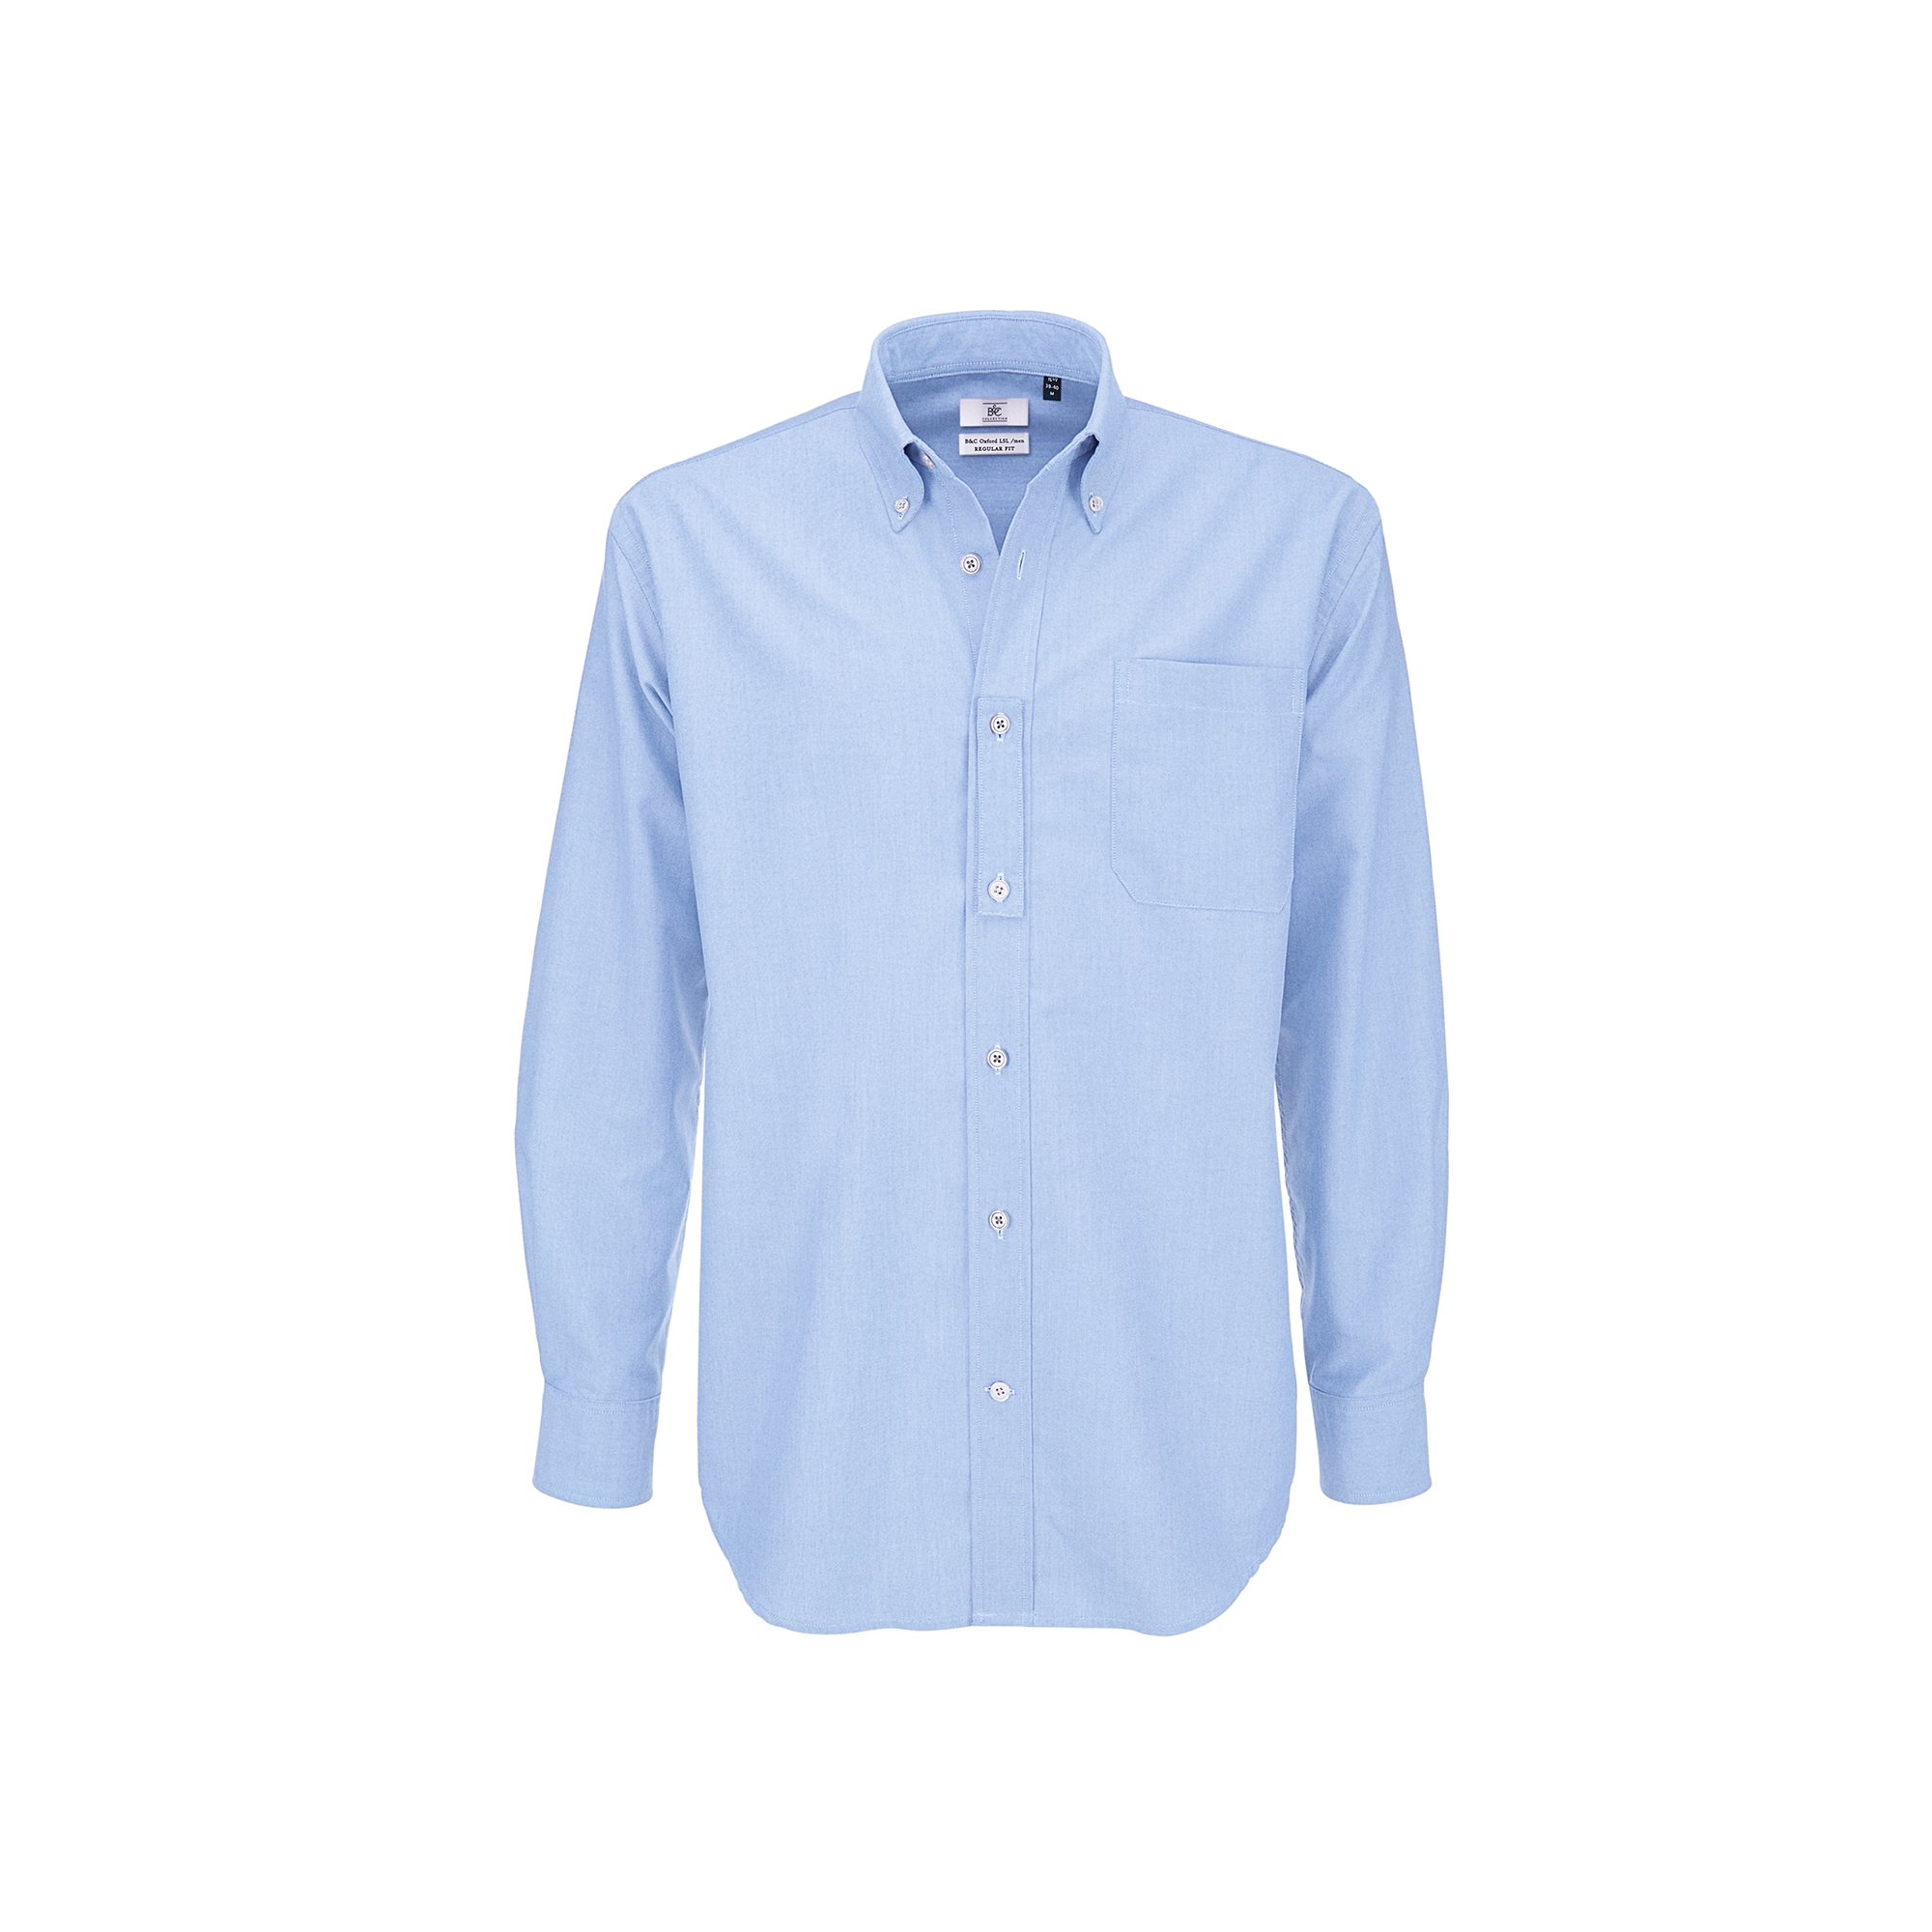 Рубашка мужская с длинным рукавом Oxford LSL/men, голубой, полиэстер, хлопок